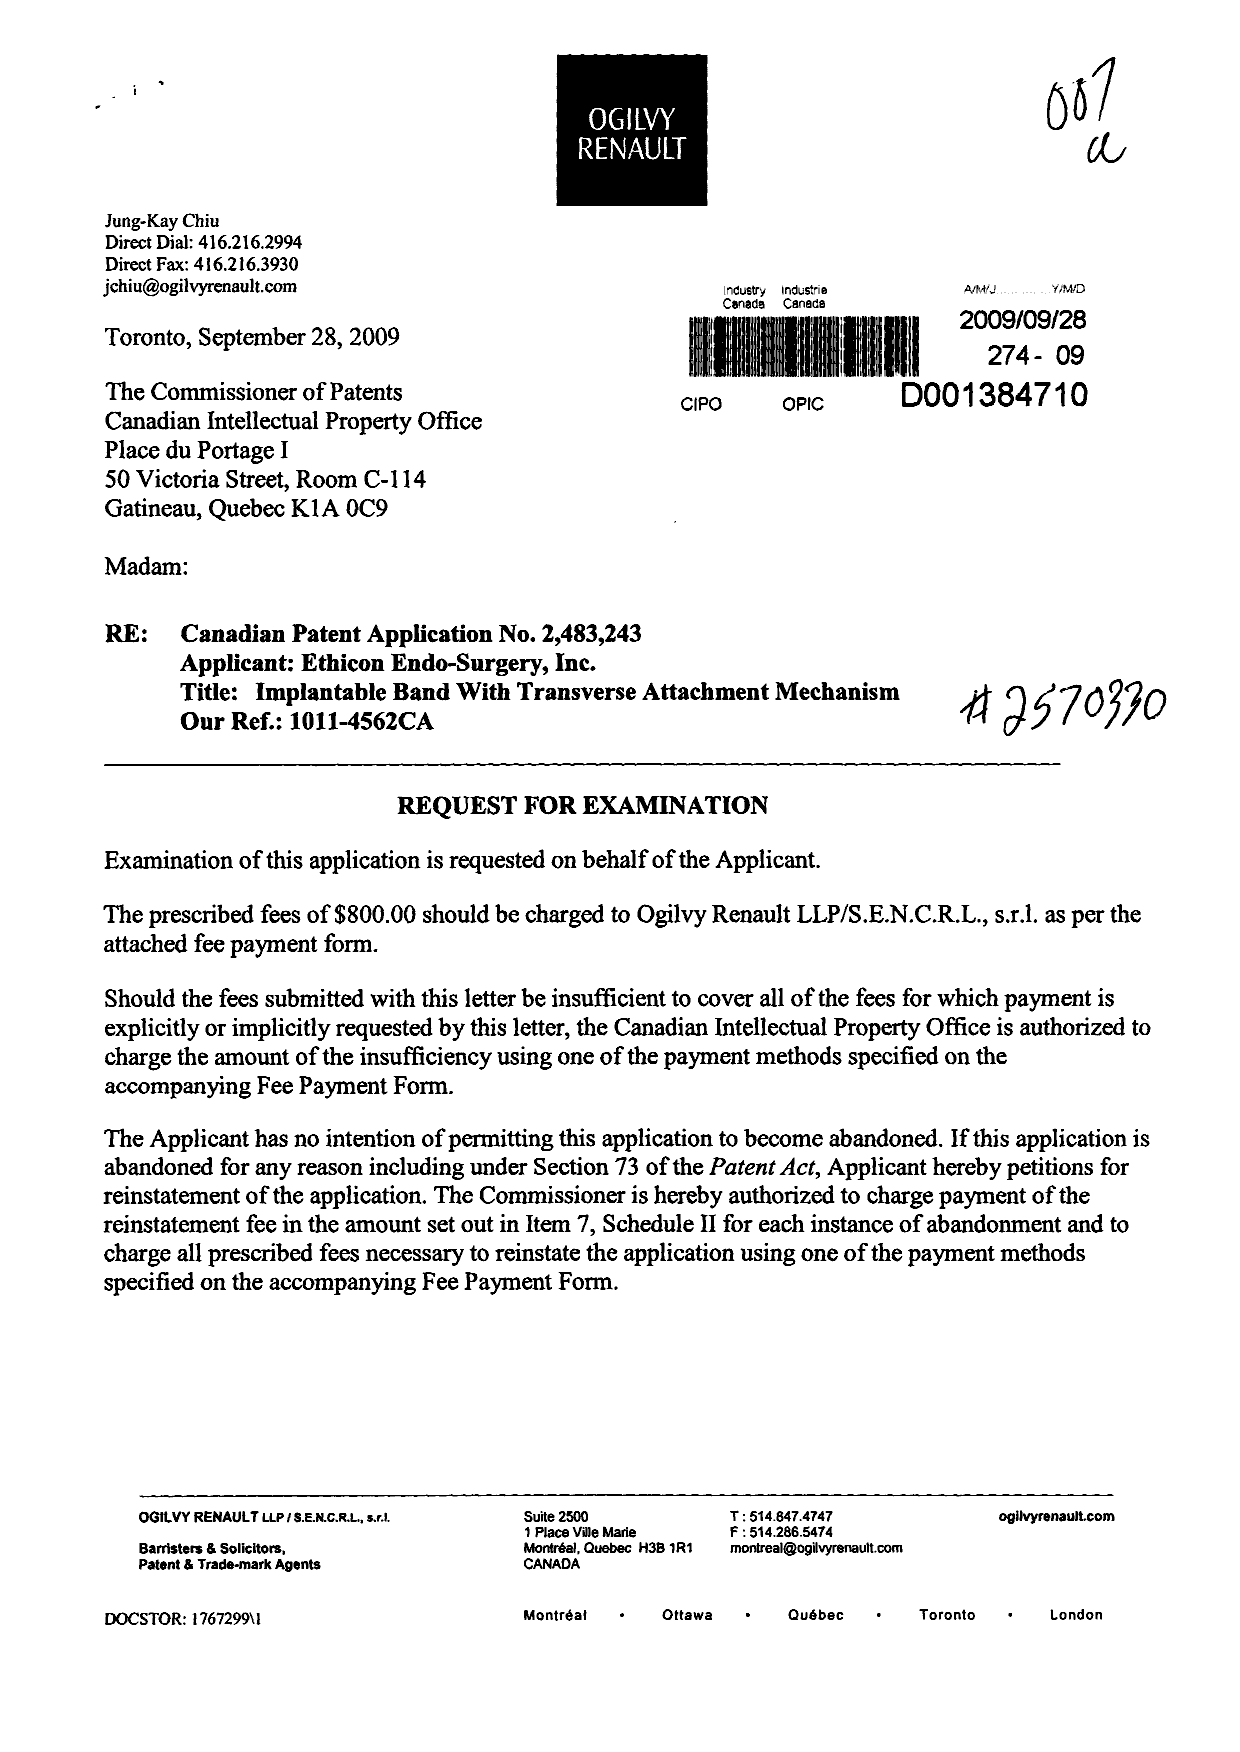 Document de brevet canadien 2483243. Poursuite-Amendment 20090928. Image 1 de 2